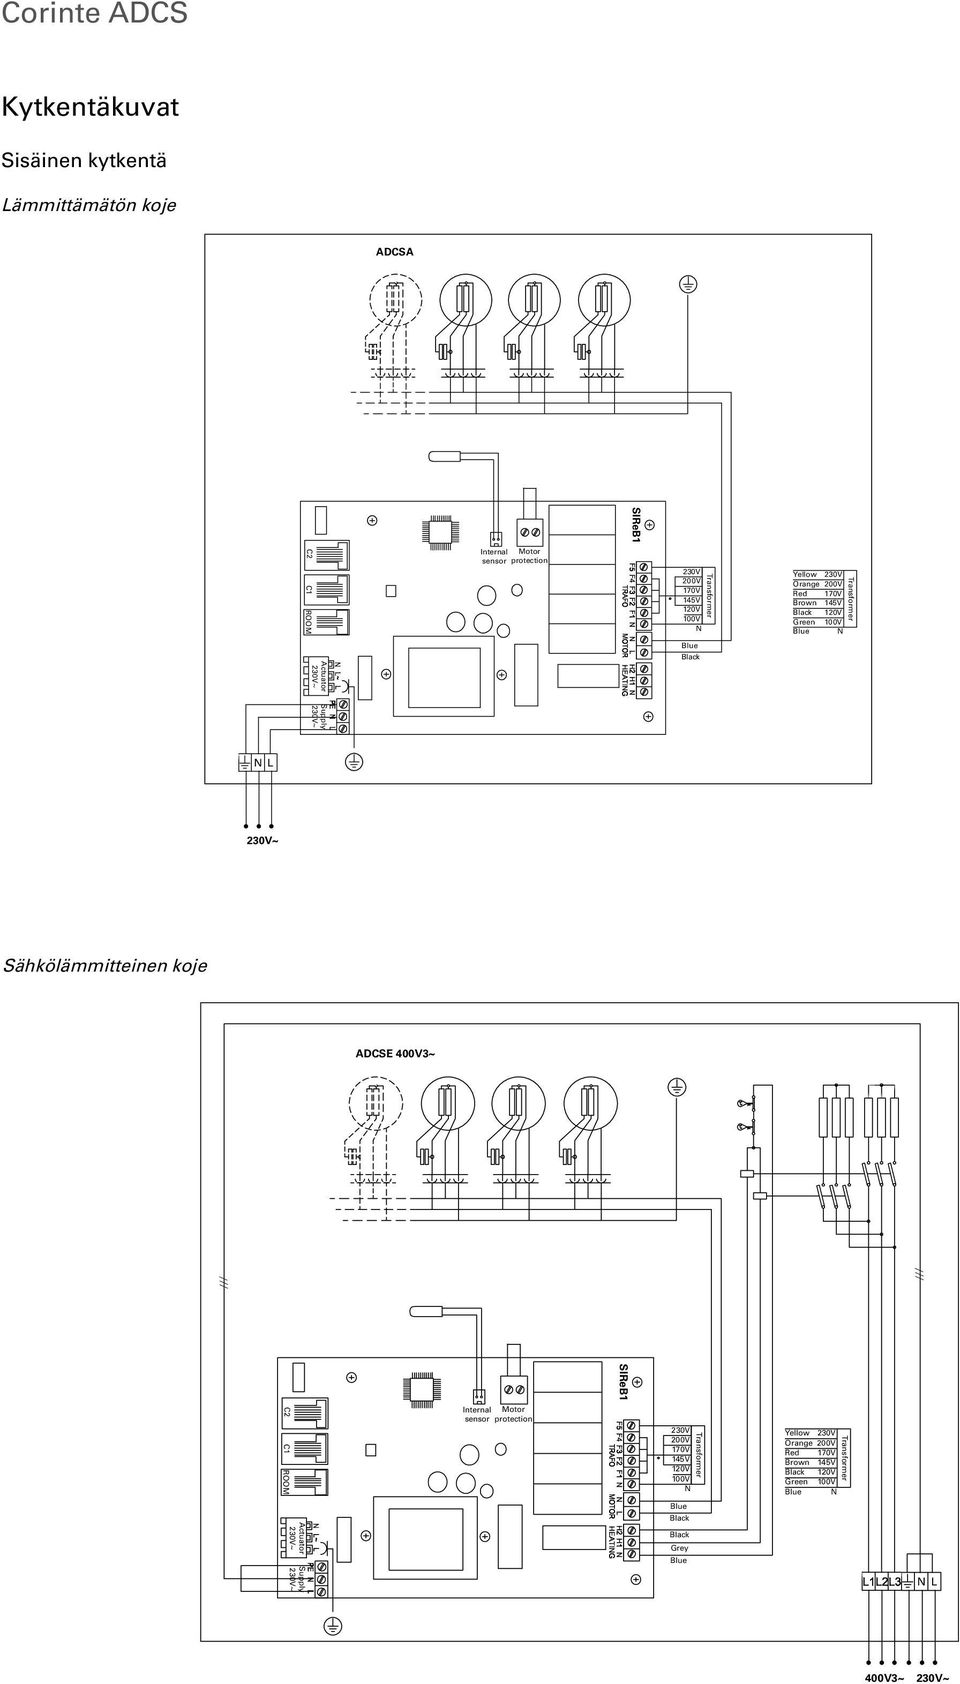 Supply N L Sähkölämmitteinen koje ADCSE 400V3~ SIReB1 C2 C1 ROOM Internal Motor sensor protection 230V 200V  Grey Supply